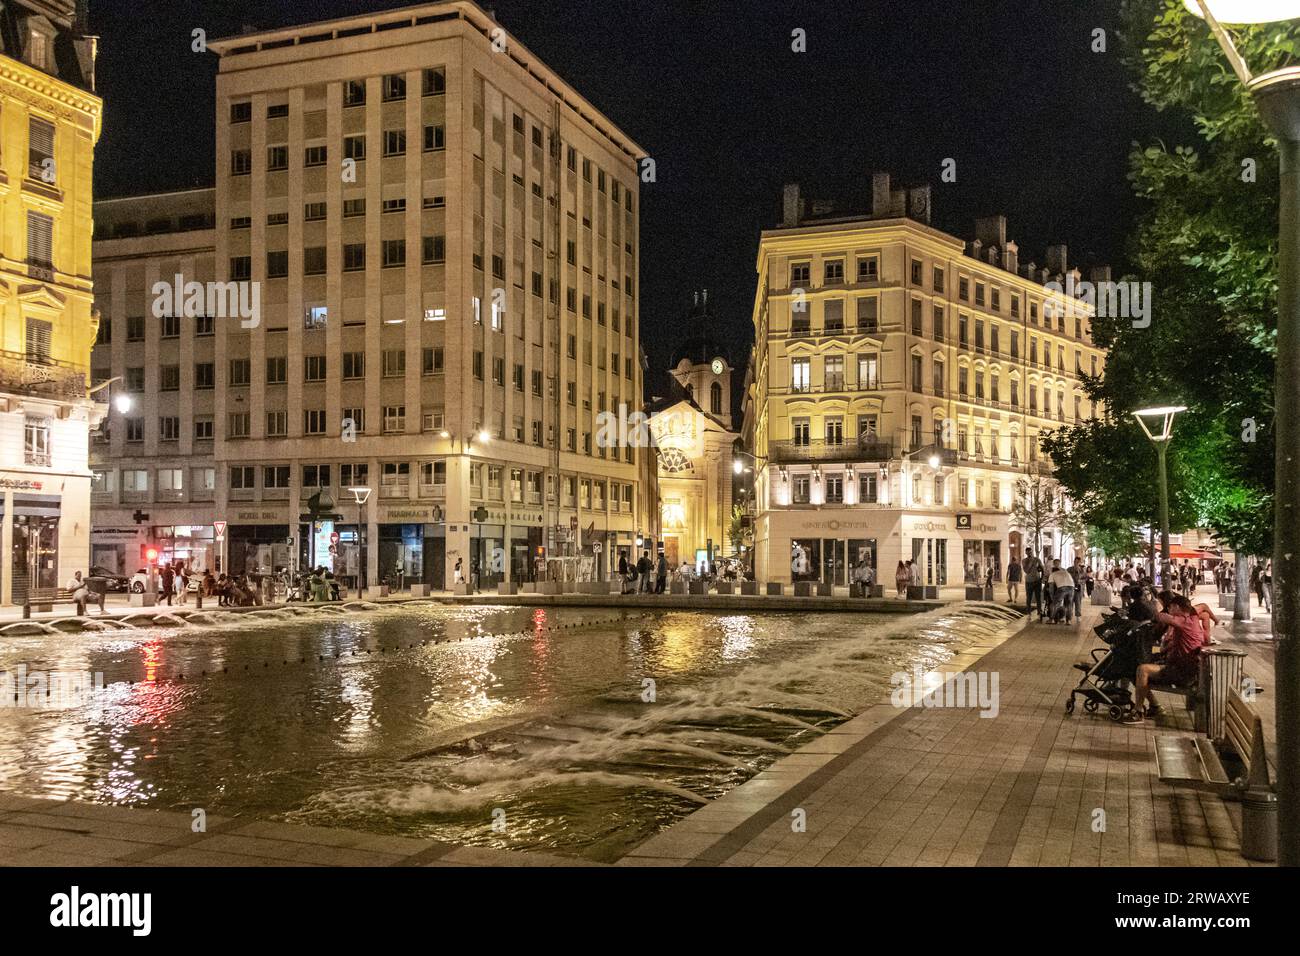 Nachtfoto des Place de la Republique im 2. Arrondissement von Lyon. Stockfoto